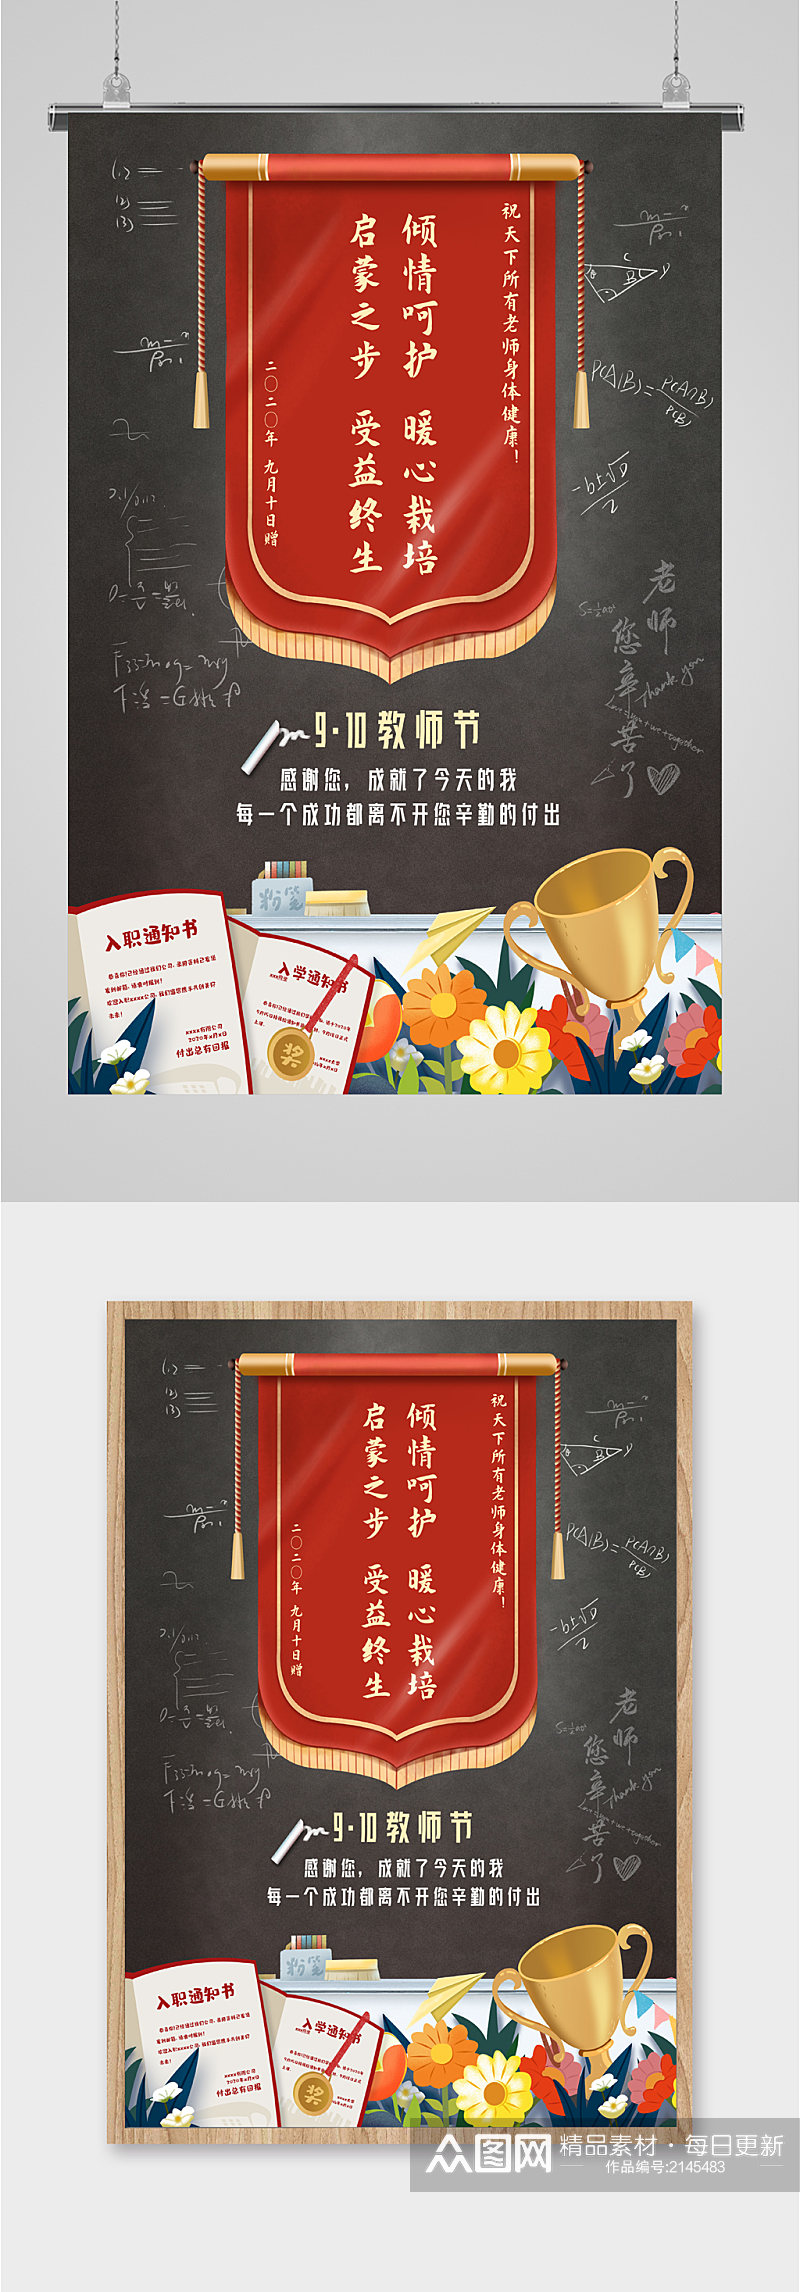 教师节节日快乐海报素材